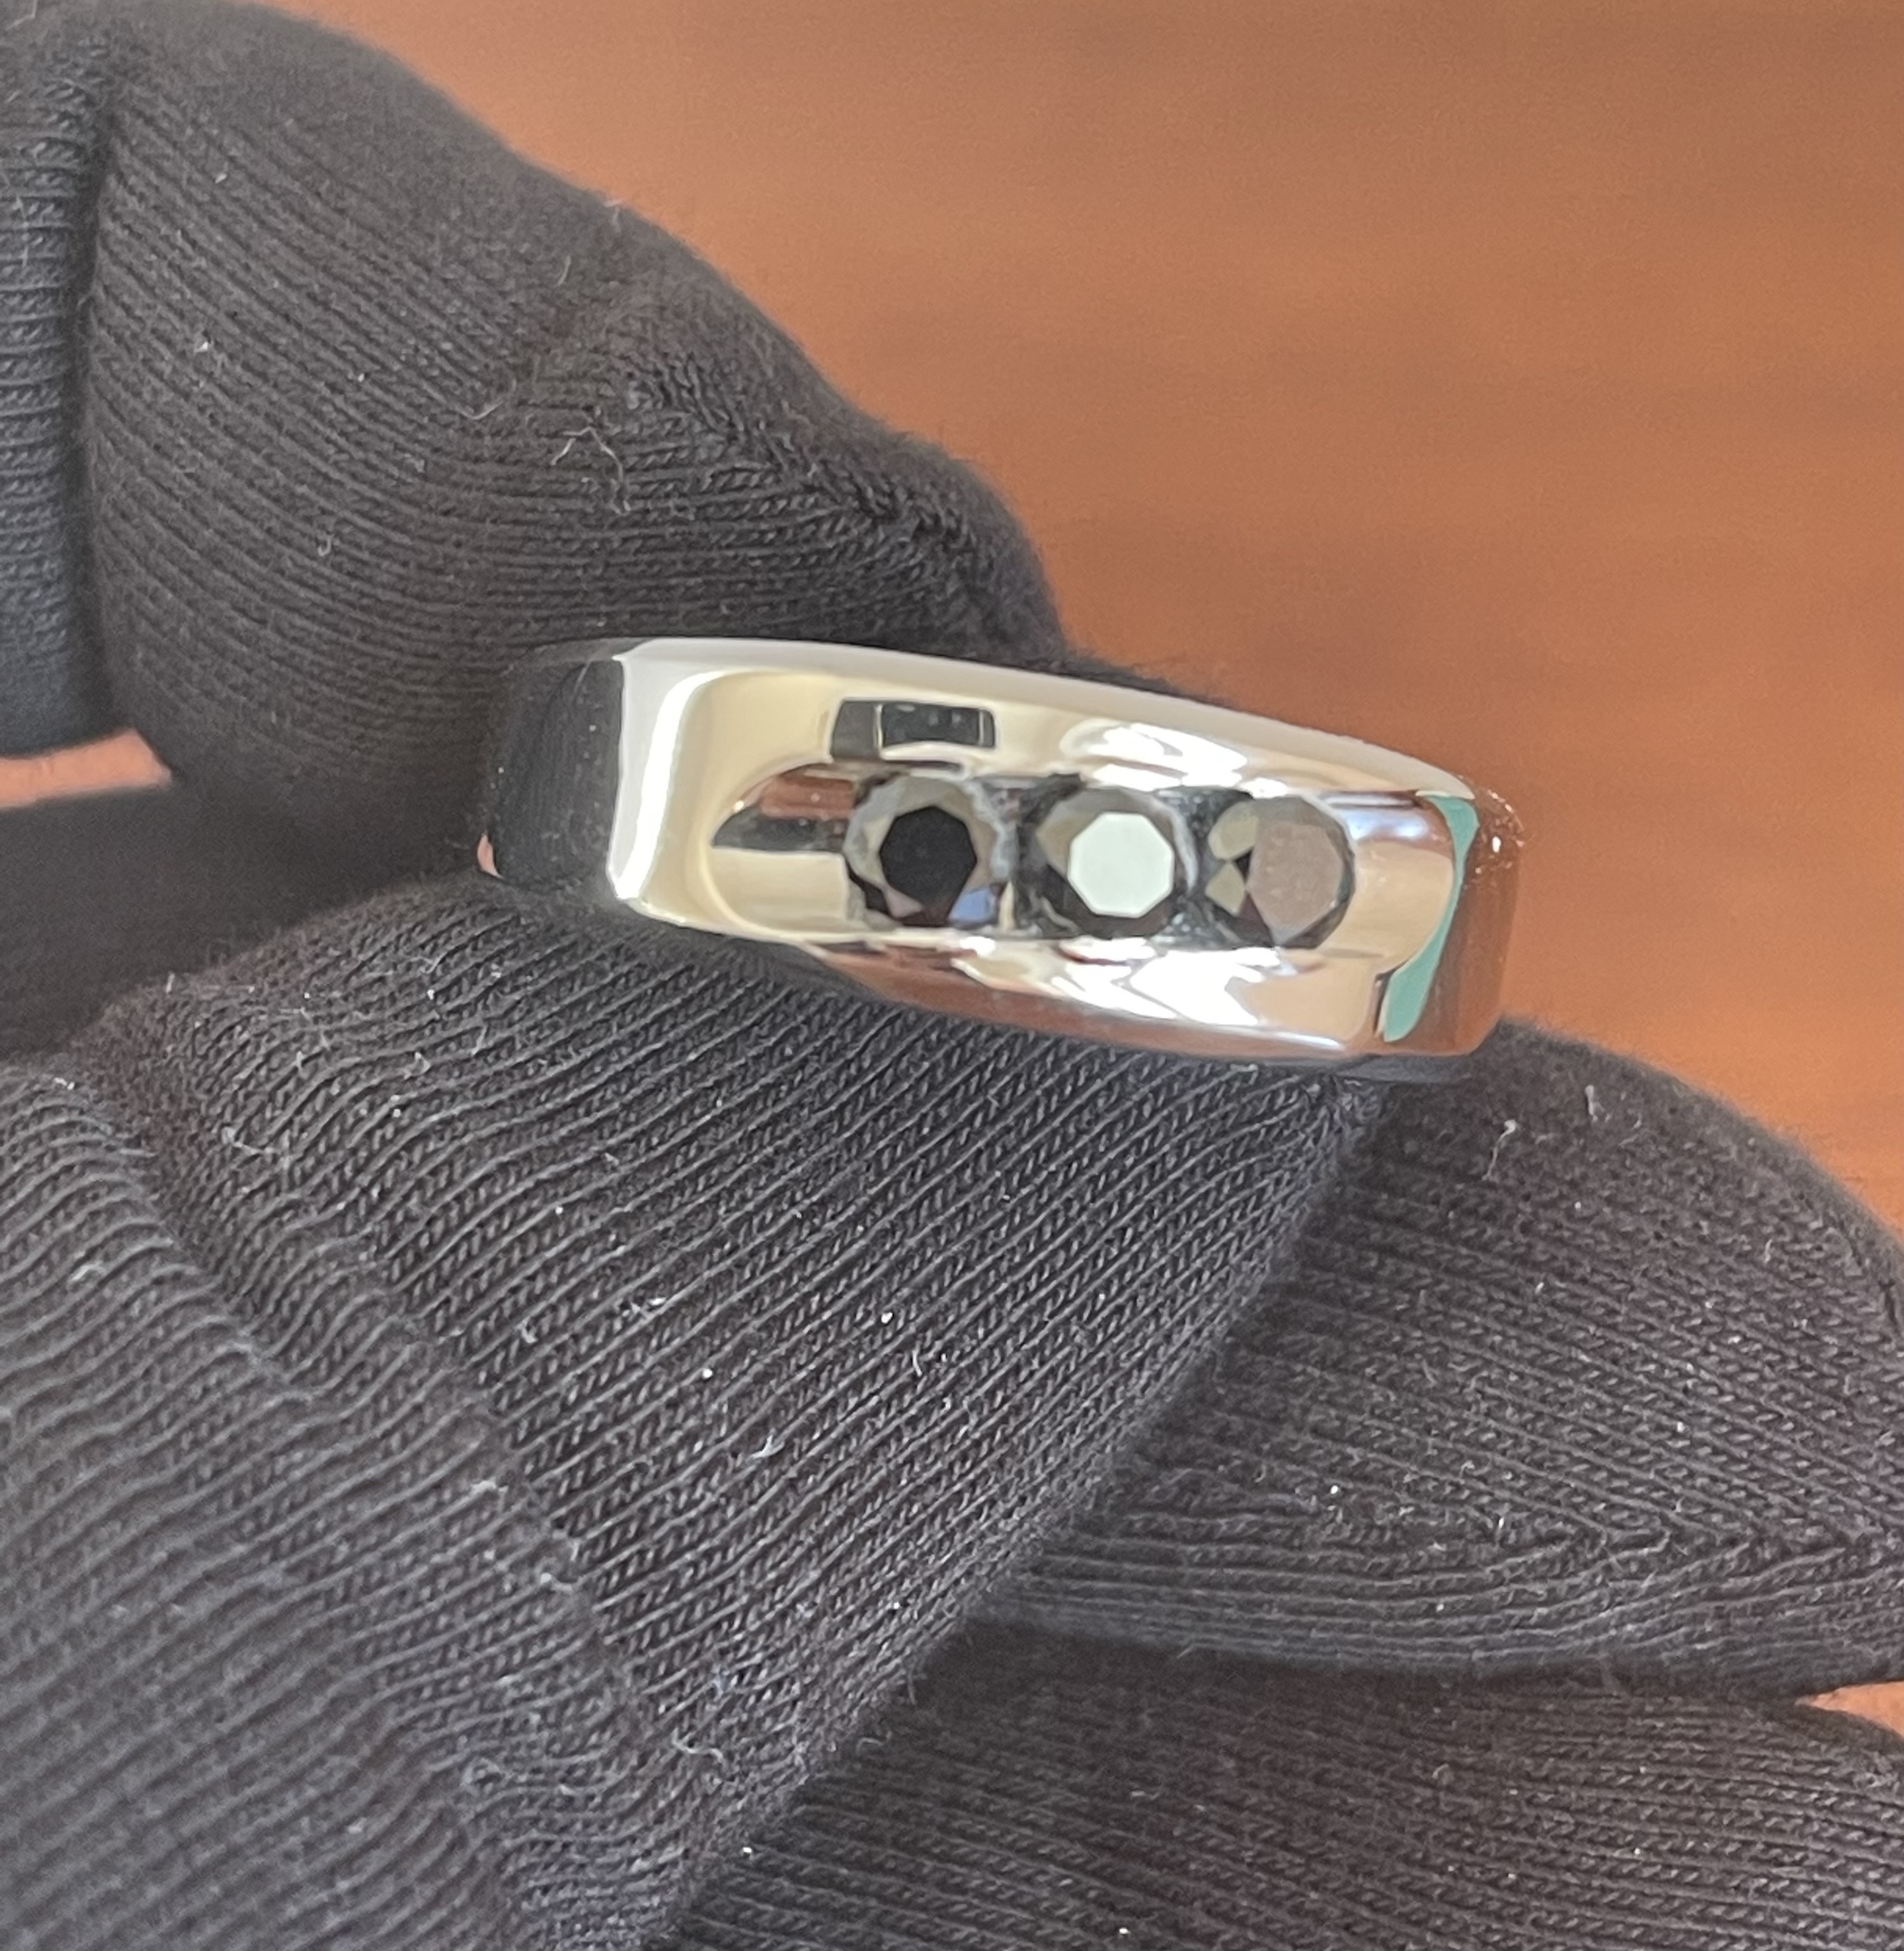 Мужское кольцо с черными бриллиантами(0,42 ct) из платины 